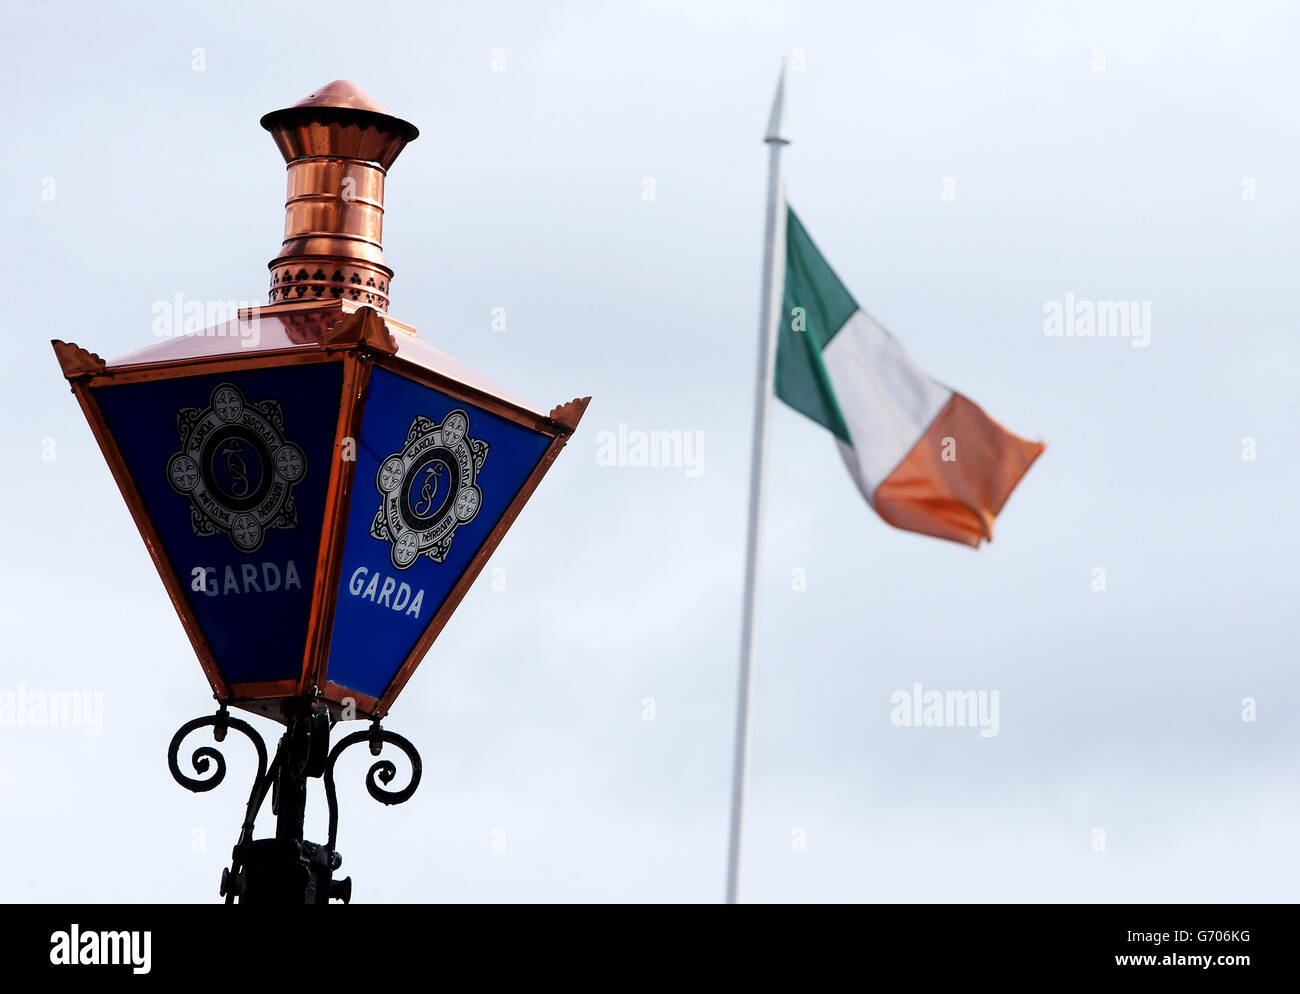 Eine Garda-Lampe und eine dreifarbige Lampe außerhalb des Garda-Hauptquartiers im Phoenix Park, Dublin. Stockfoto